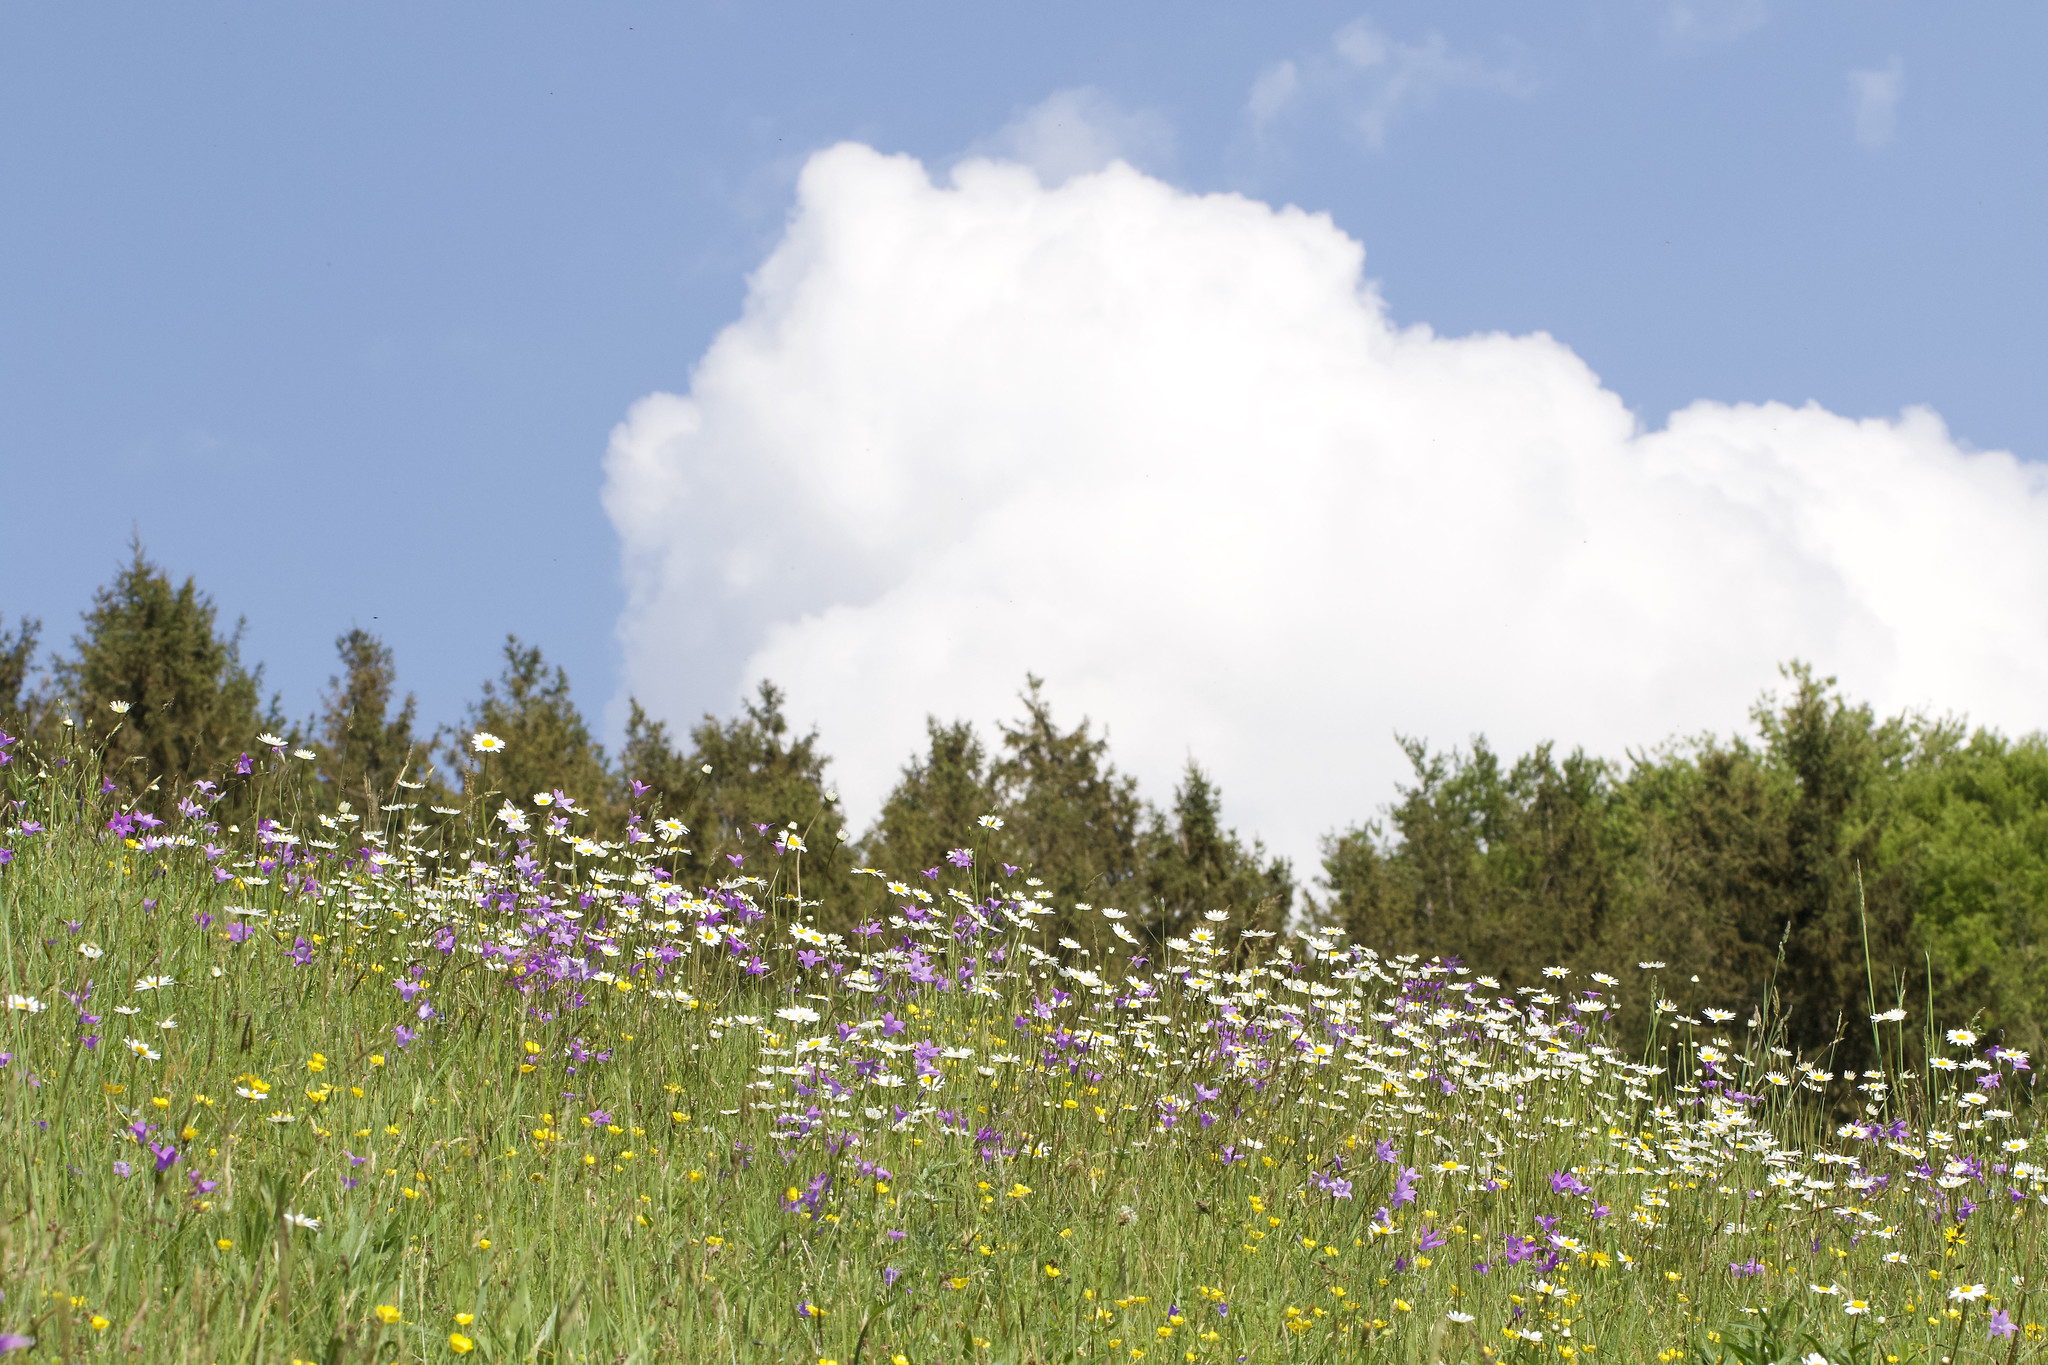 Flower meadow – Lengmoos, Upper Bavaria, Germany